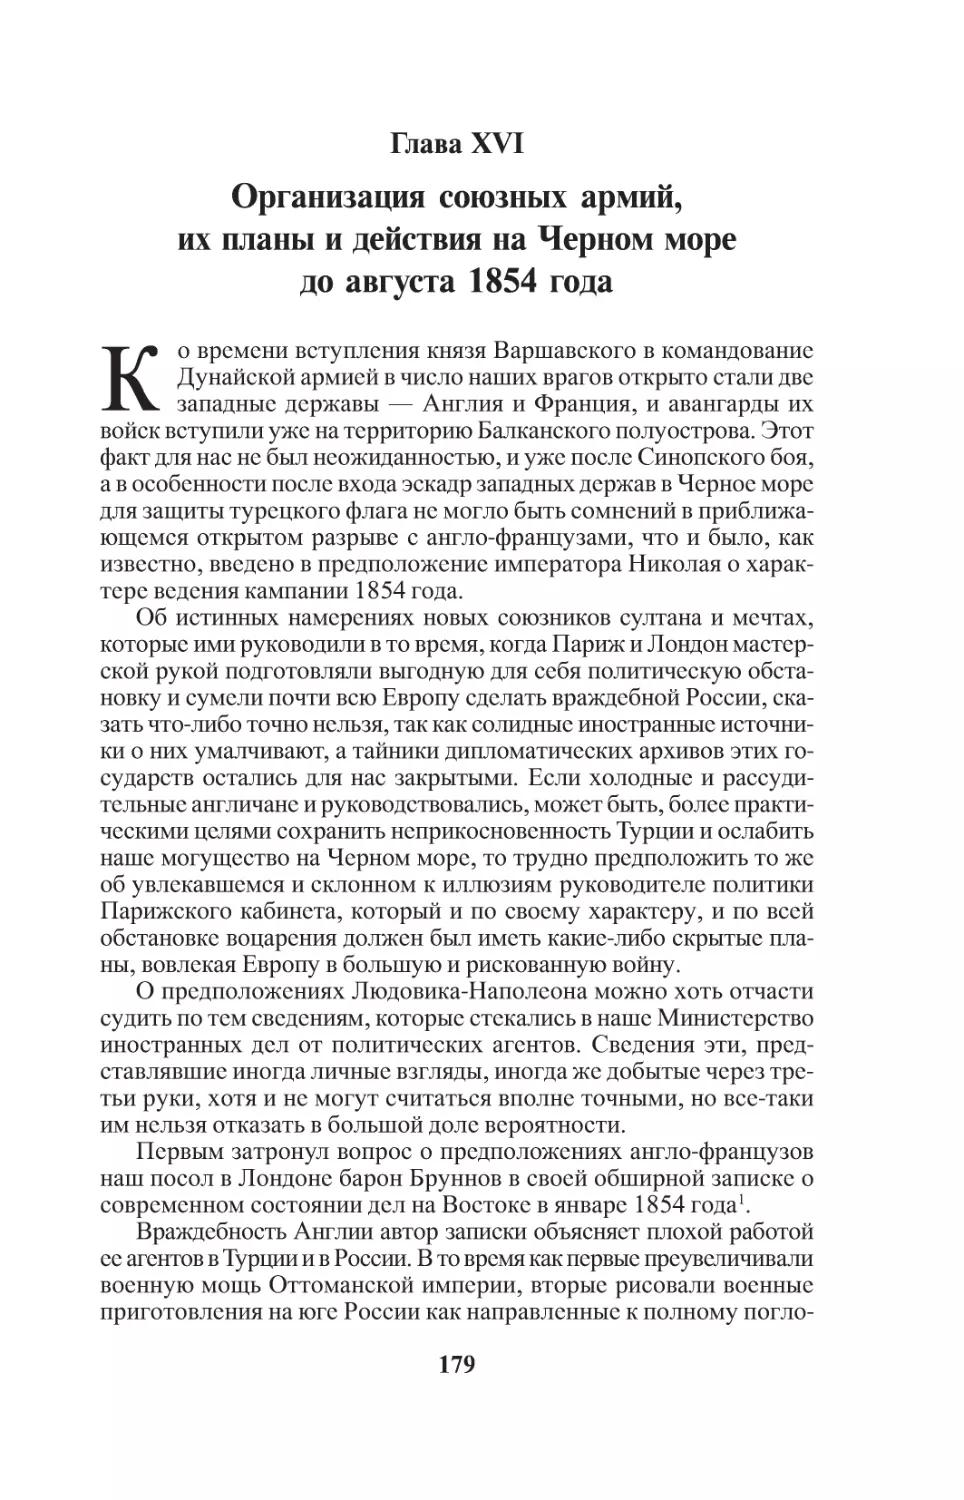 Глава XVI. Организация союзных армий, их планыи действия на Черном море до августа 1854 года